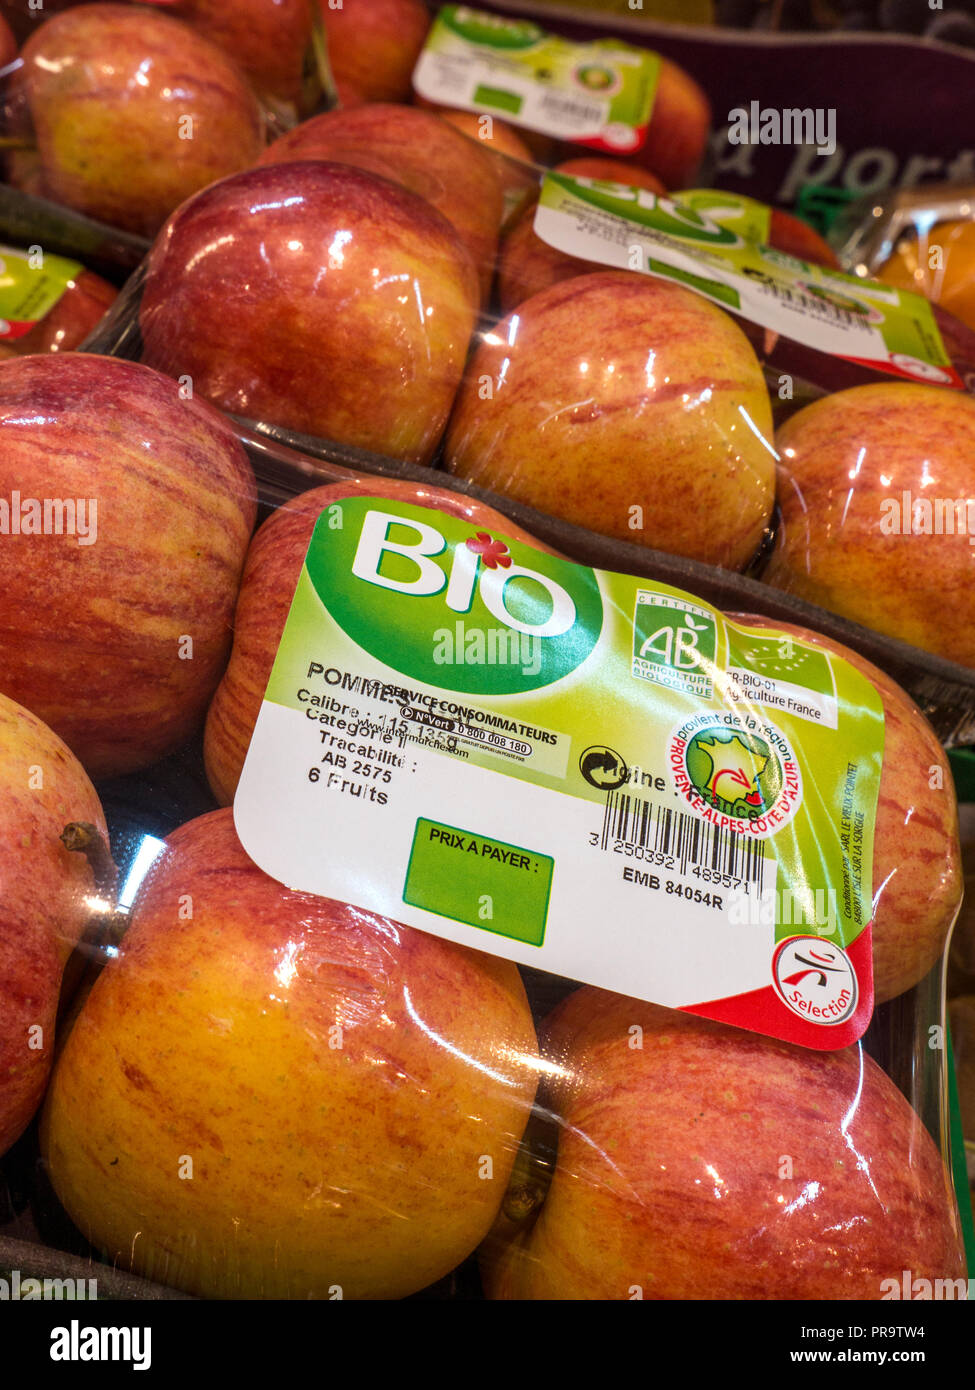 BIO biologisch-organischen Farm Obst Äpfel auf der Anzeige für den Verkauf in französischen Supermarkt verpackt Stockfoto